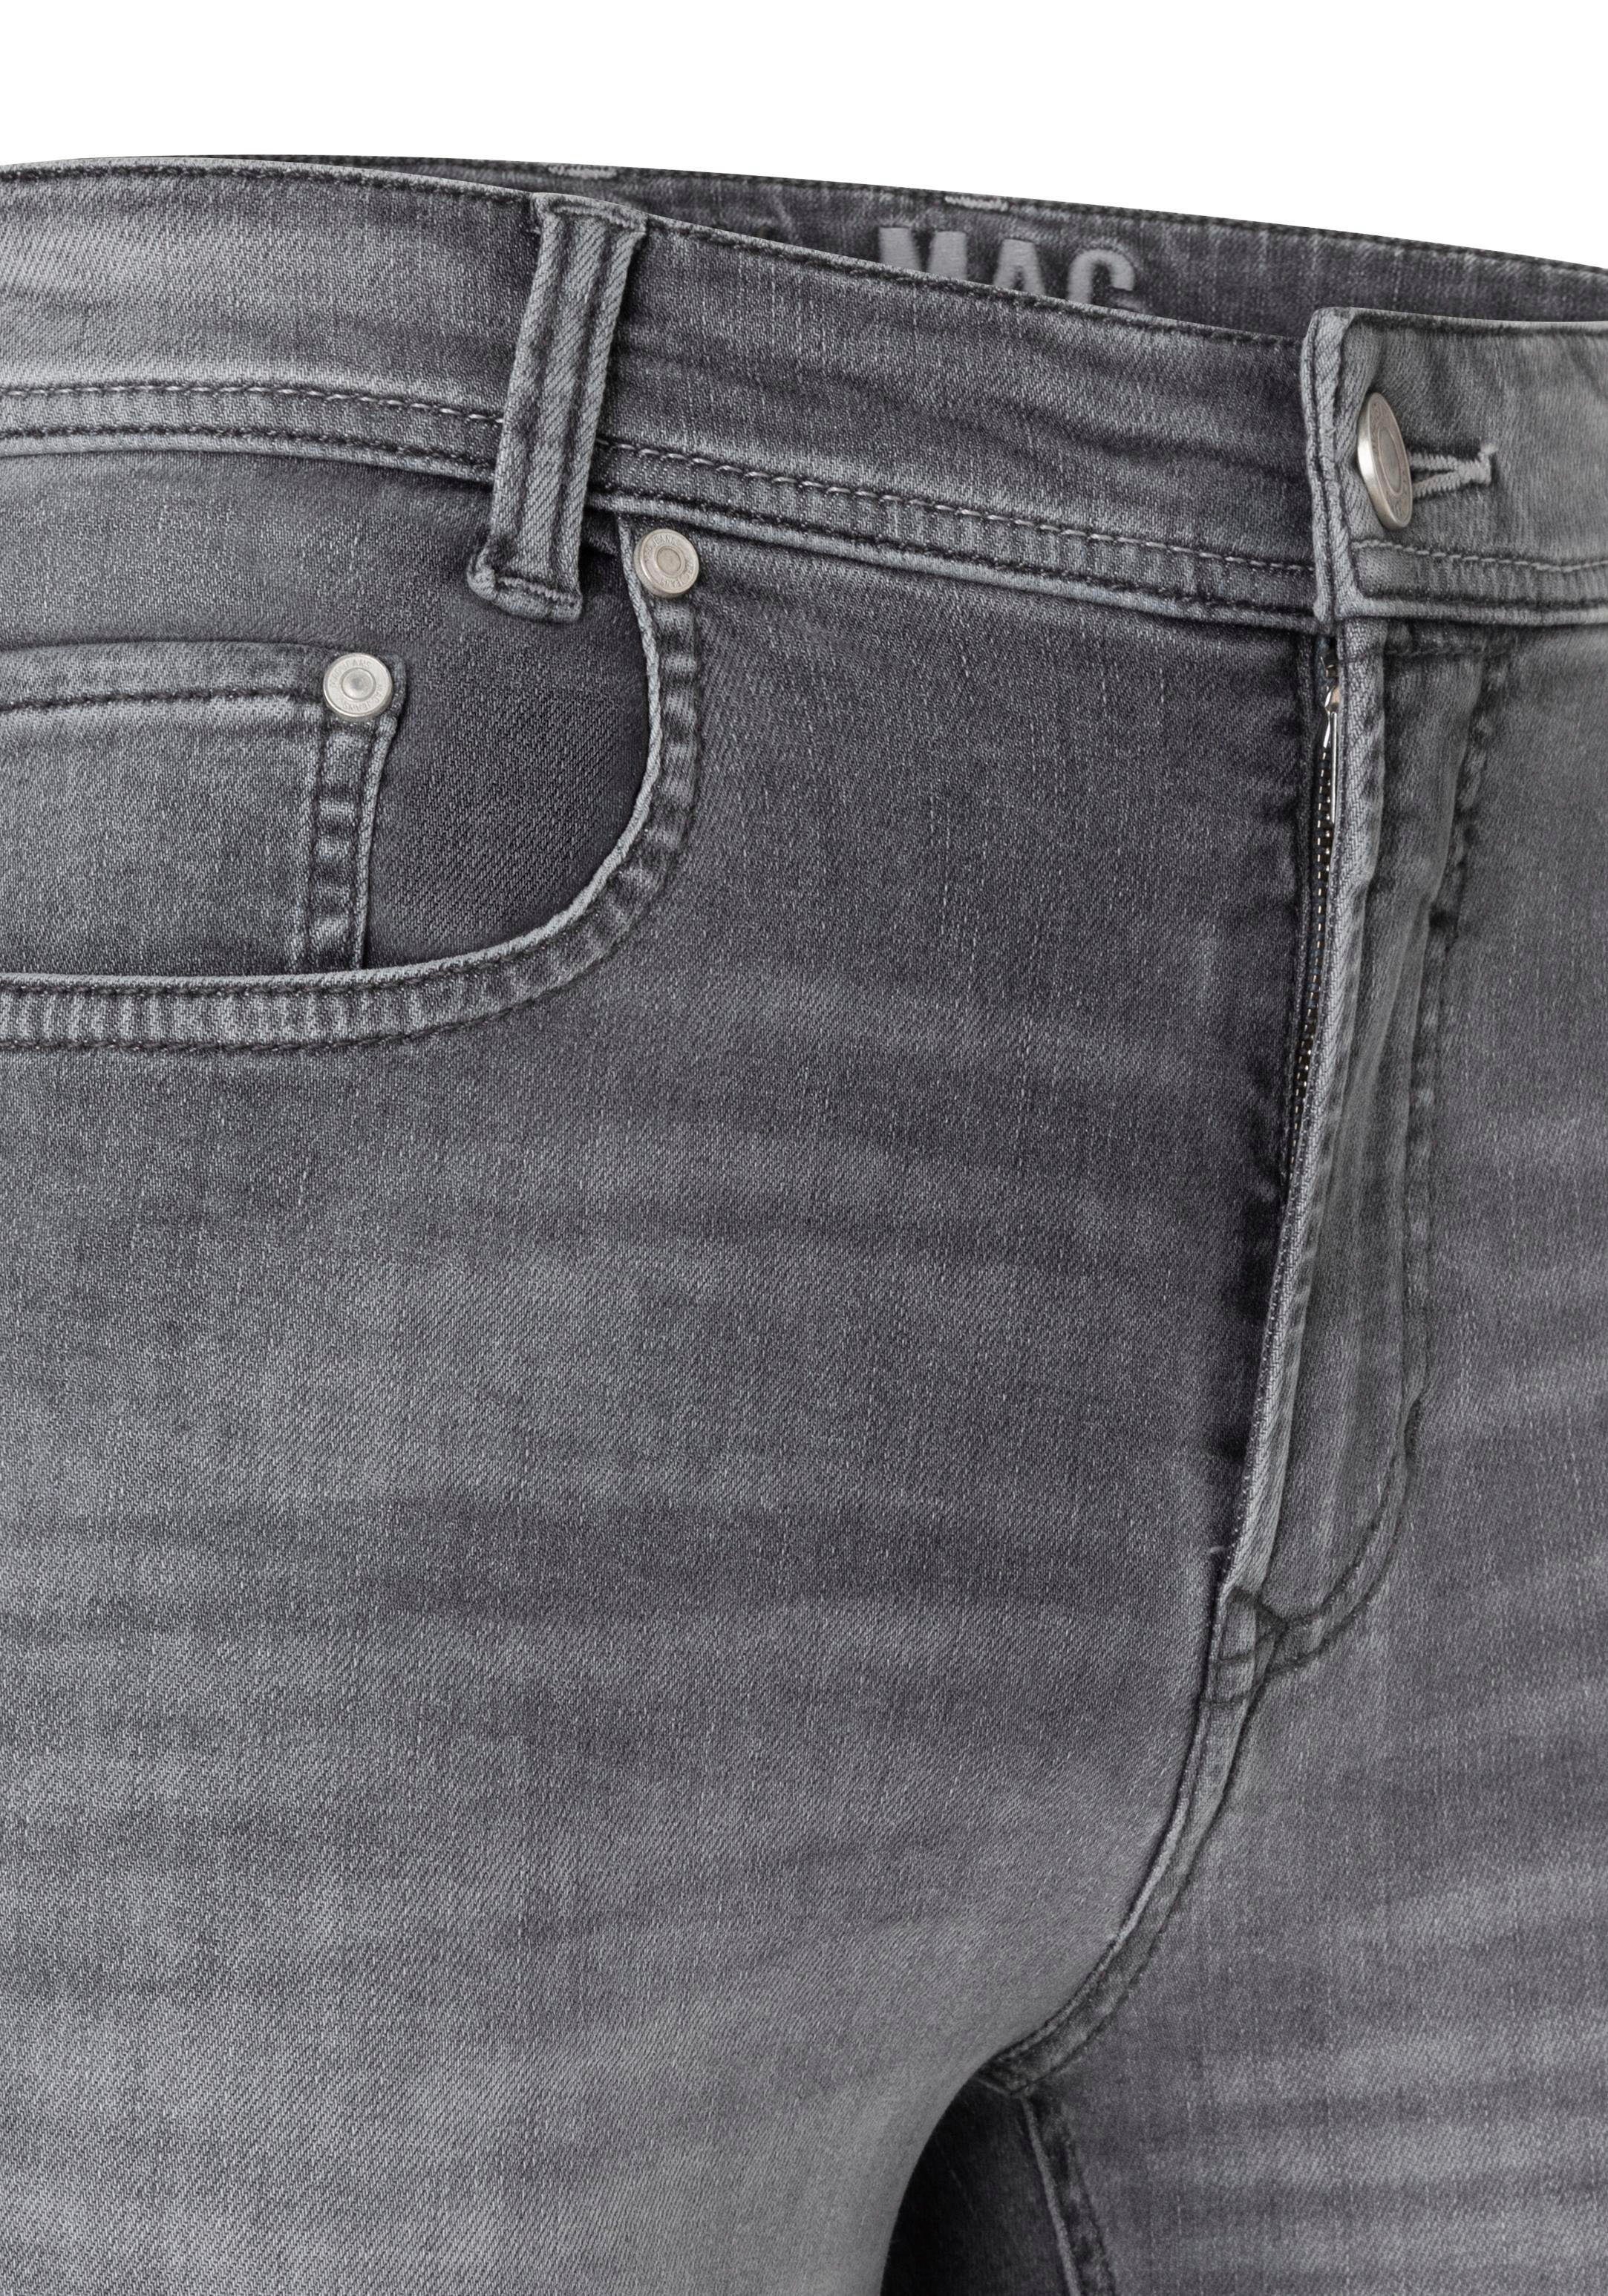 MAC Straight-Jeans Flexx-Driver super dark elastisch black washed